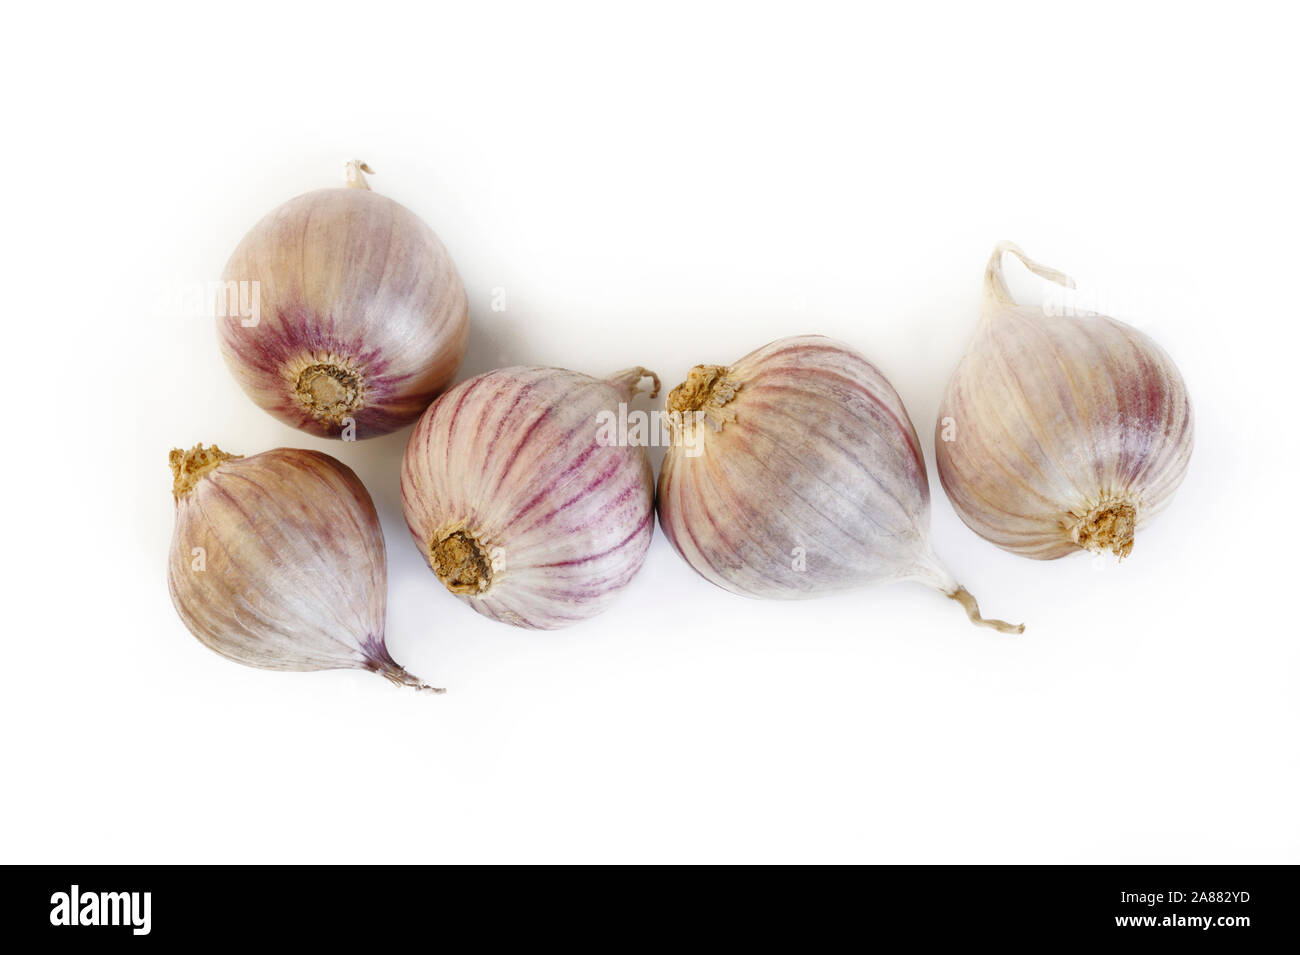 elephant garlic on white background Stock Photo